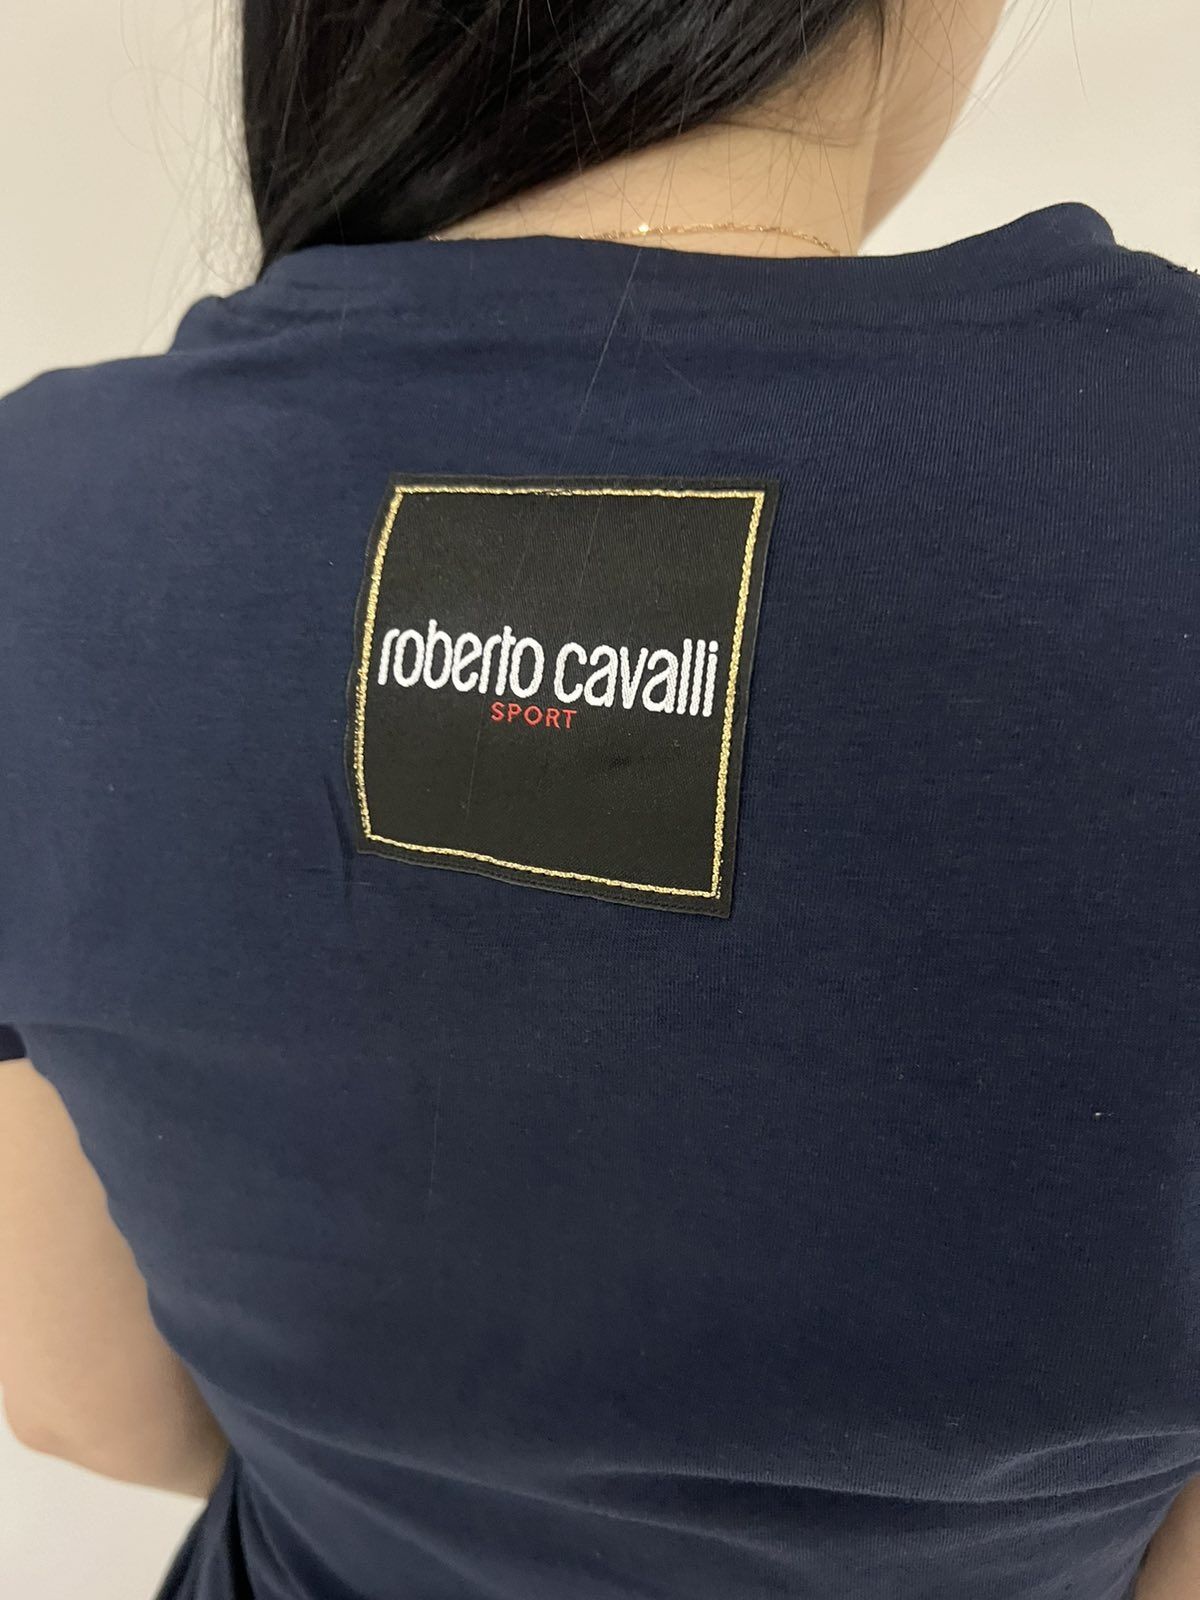 Тениска Roberto Cavalli, XS/S, нова, QR!